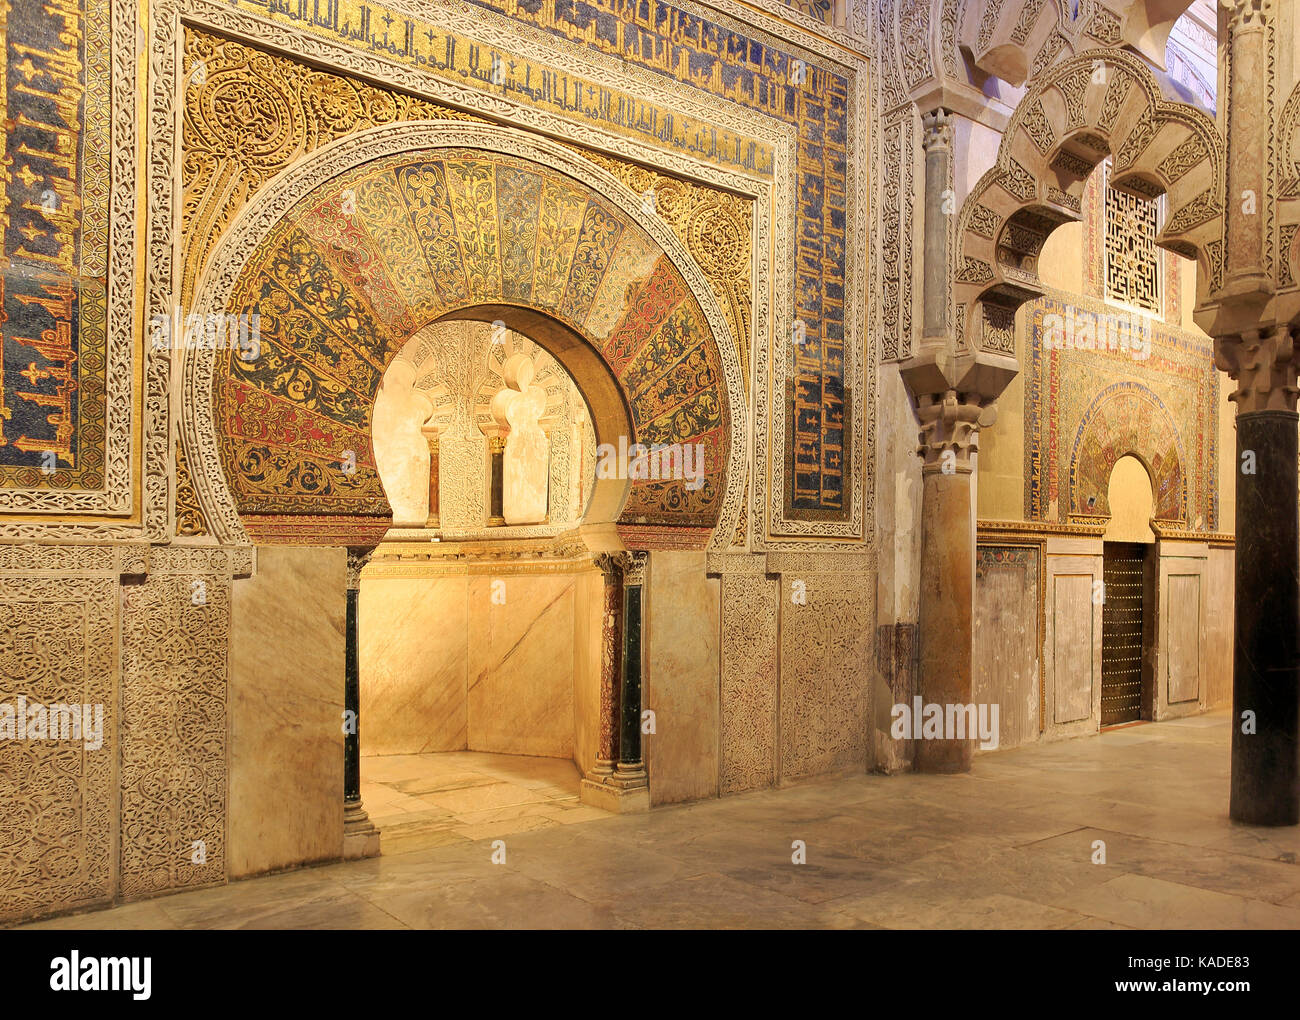 Cordoba, Spagna - 30 giugno 2017: la moschea-cattedrale di Cordoba è il monumento più importante di tutti i western mondo islamico. cancelli di moresco. Foto Stock